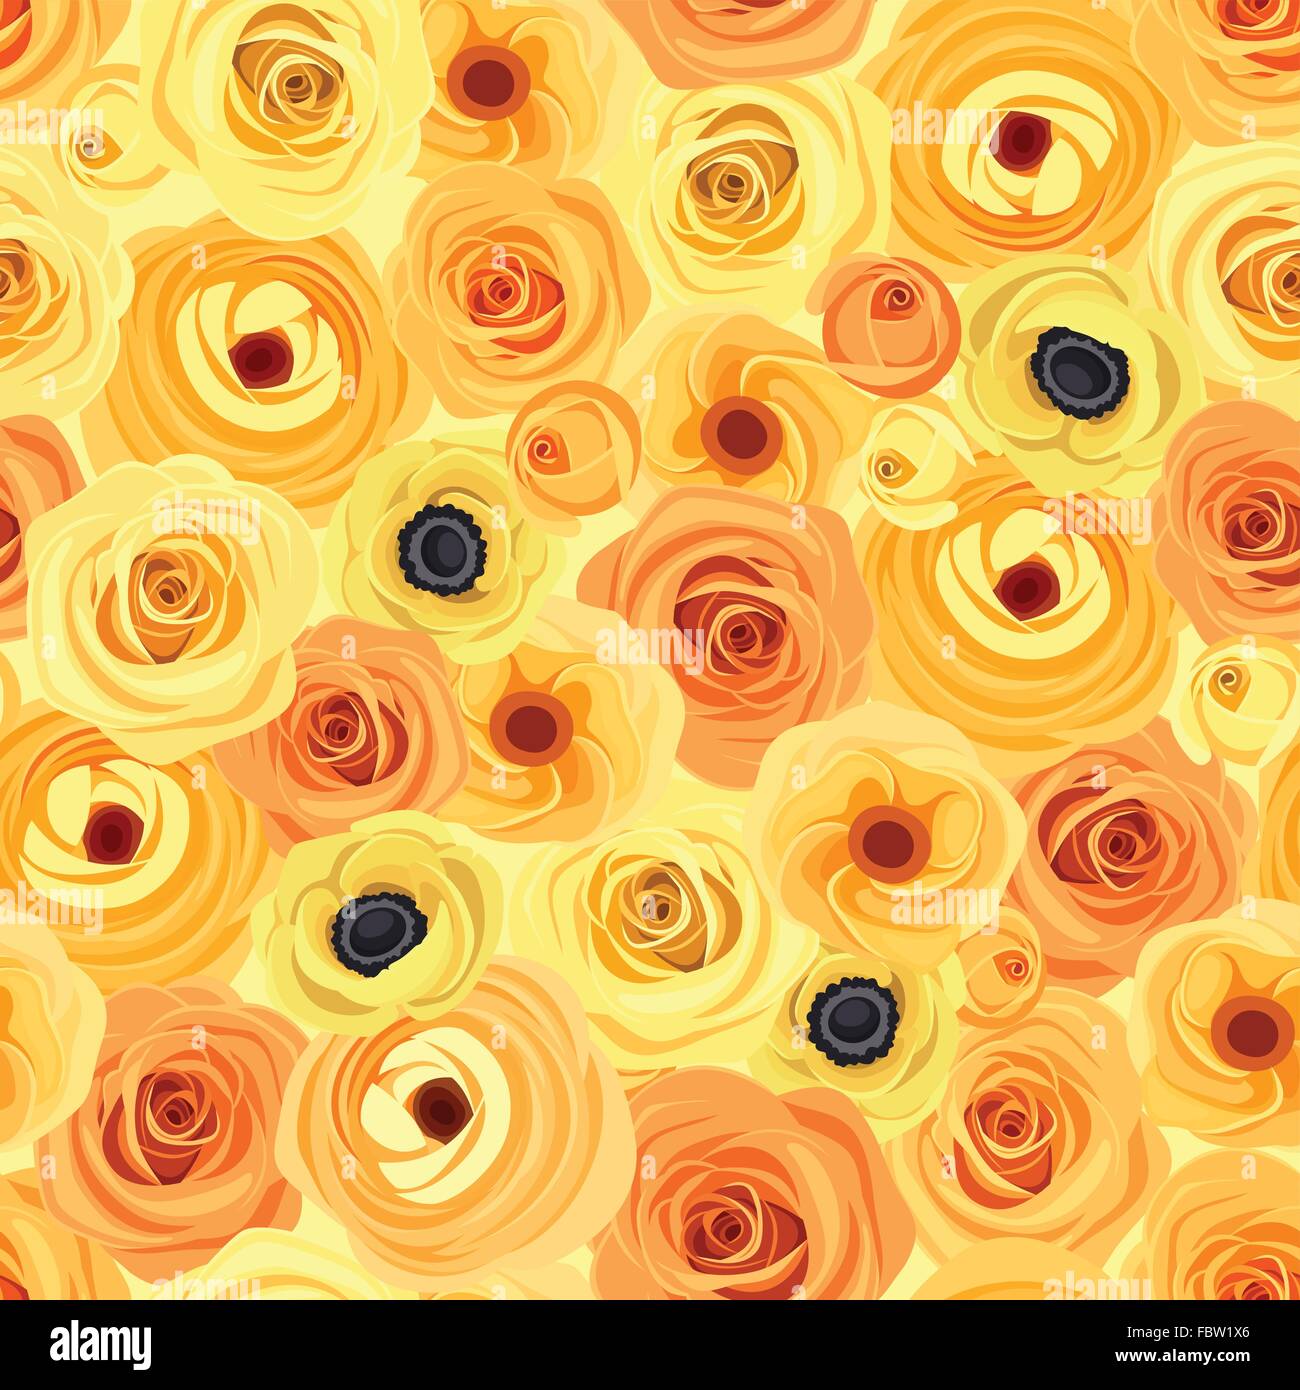 Sin Fisuras con fondo naranja y flores amarillas. Ilustración vectorial. Ilustración del Vector